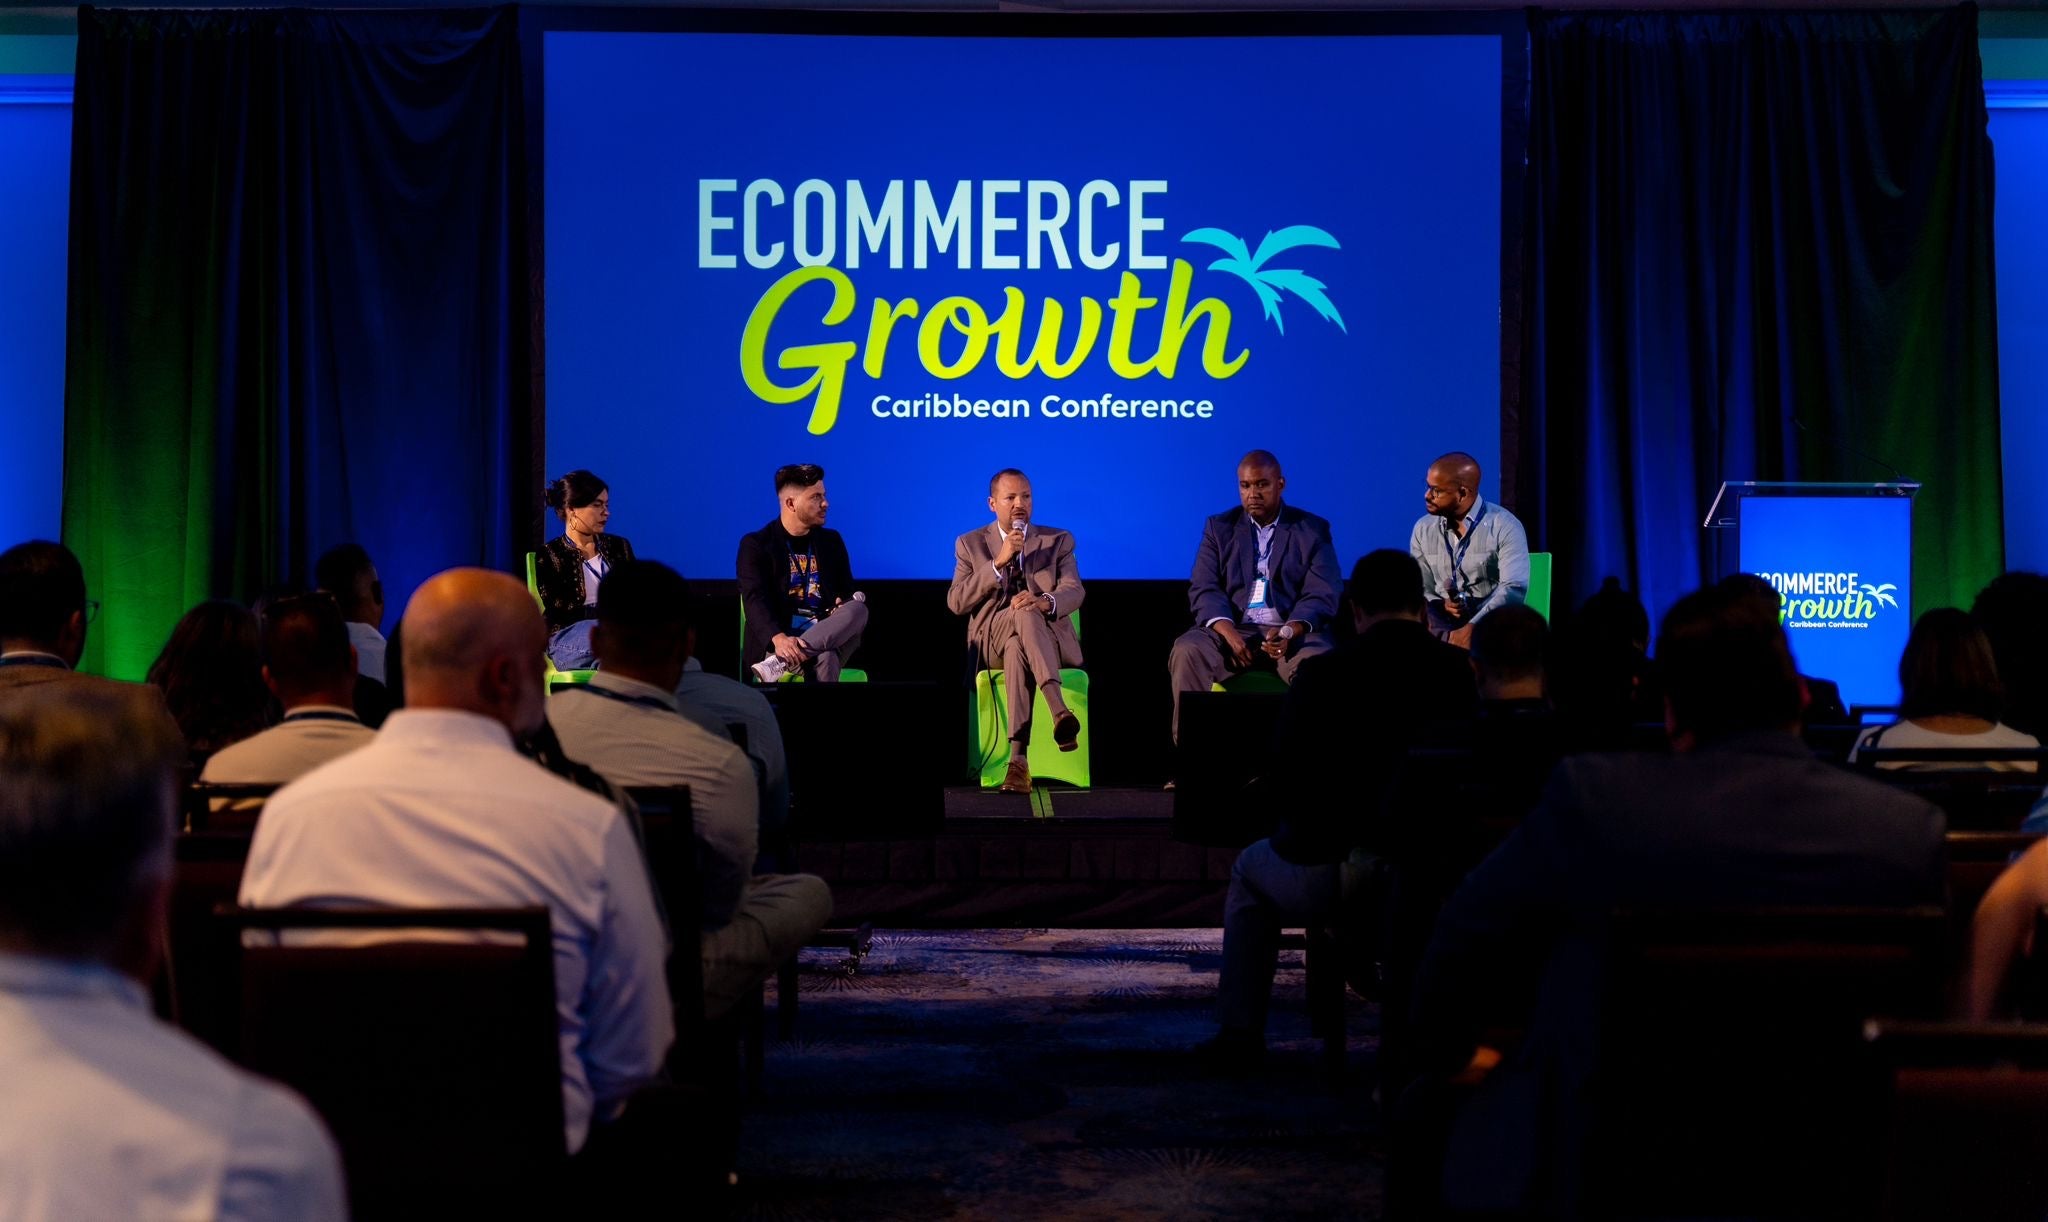 Cargar video: Conoce lo que estamos planificando para el Ecommerce Growth Caribbean Conference